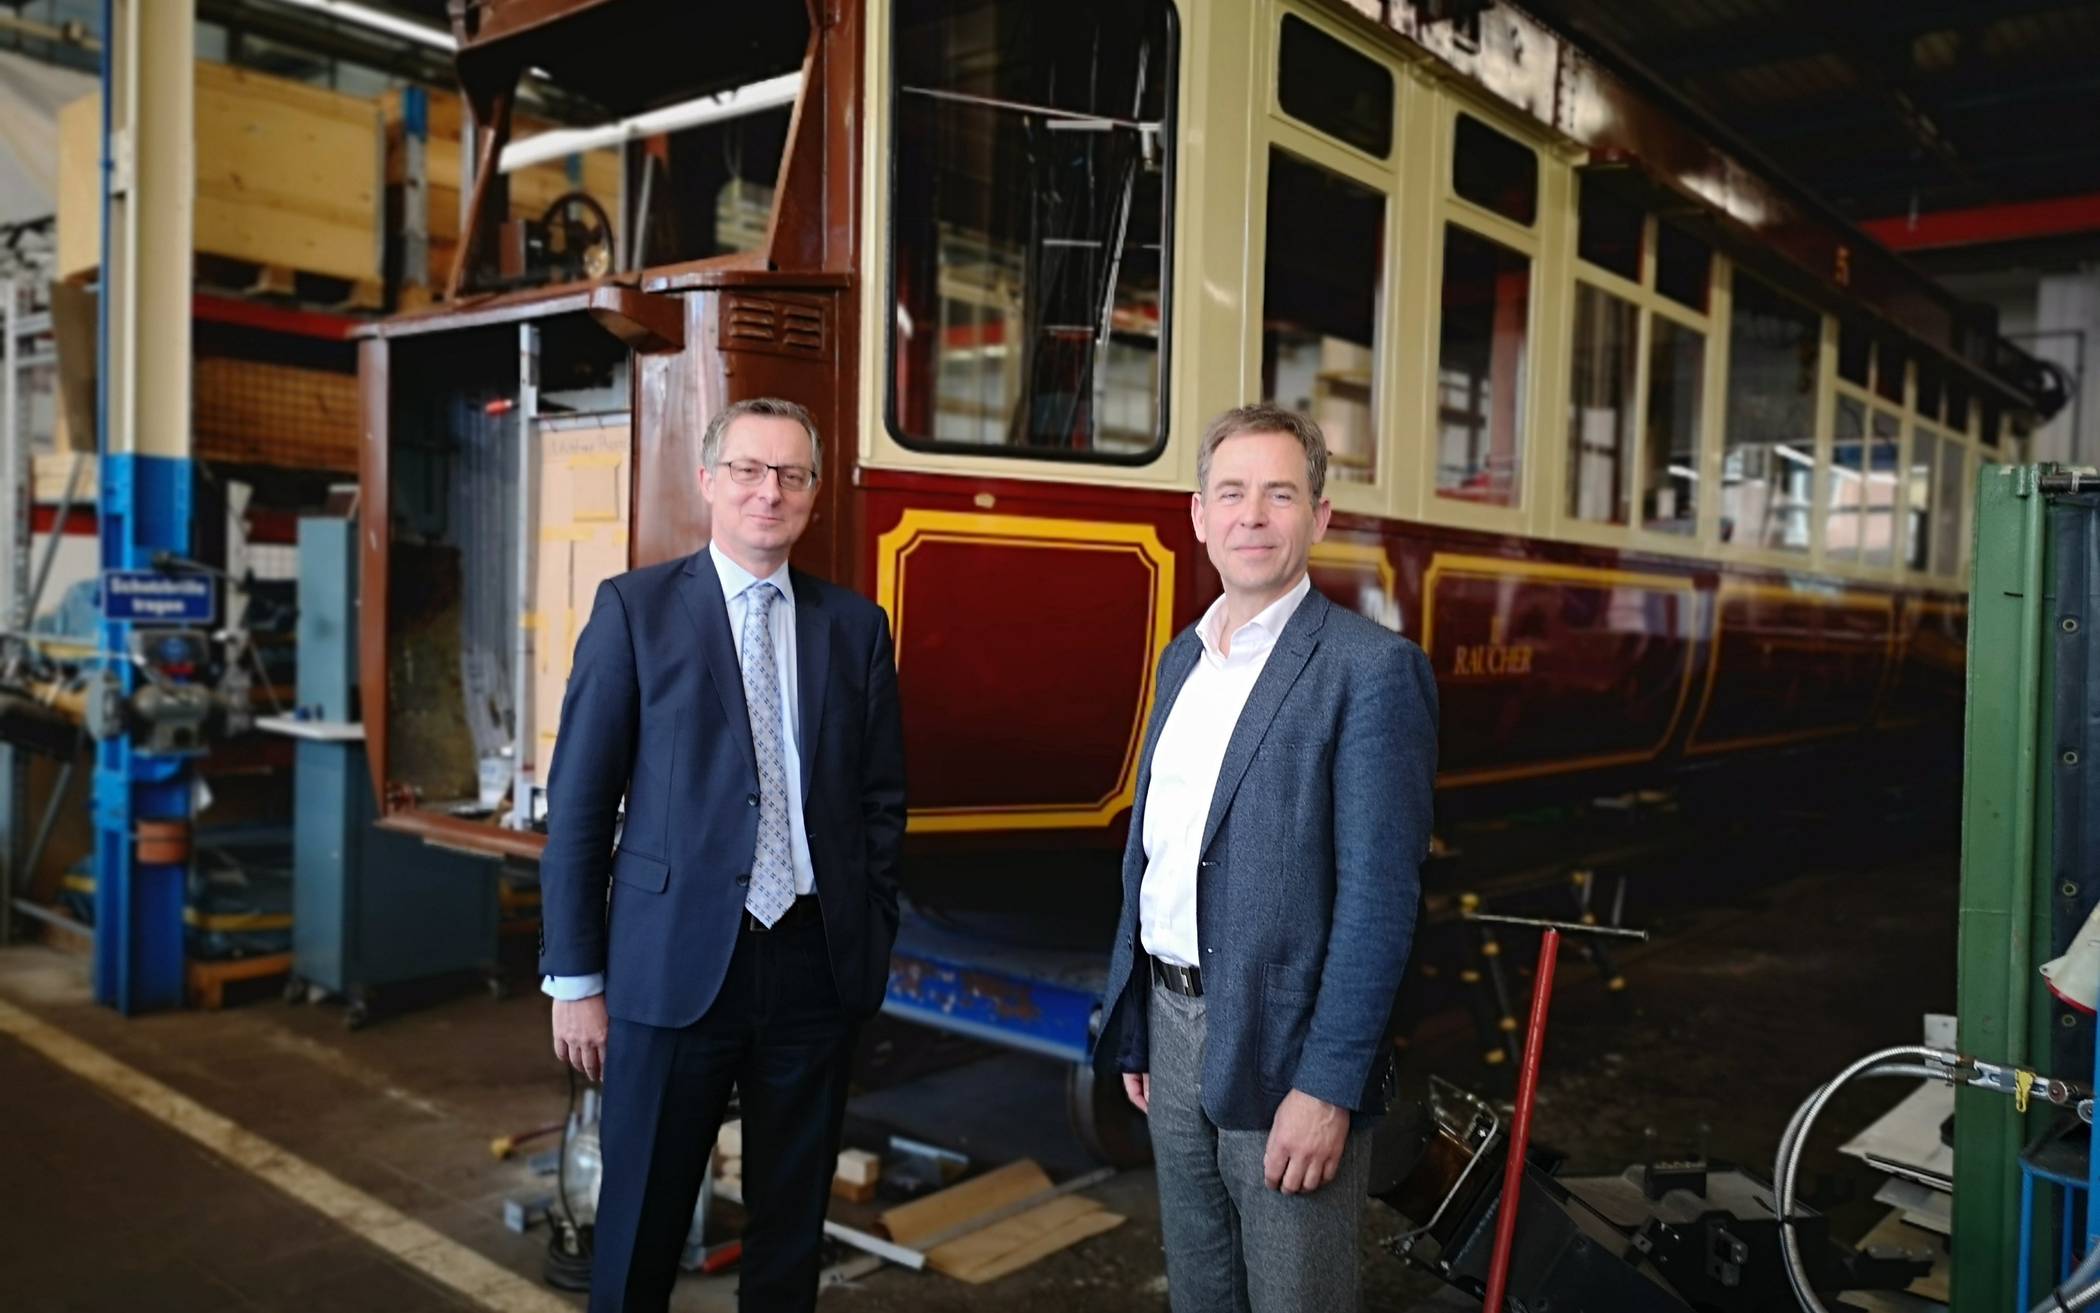  WSW-Geschäftsführer Ulrich Jaeger und Wuppertal Marketing Geschäftsführer Martin Bang vor dem Kaiserwagen, der wohl erst wieder im September 2021 fahren wird.  